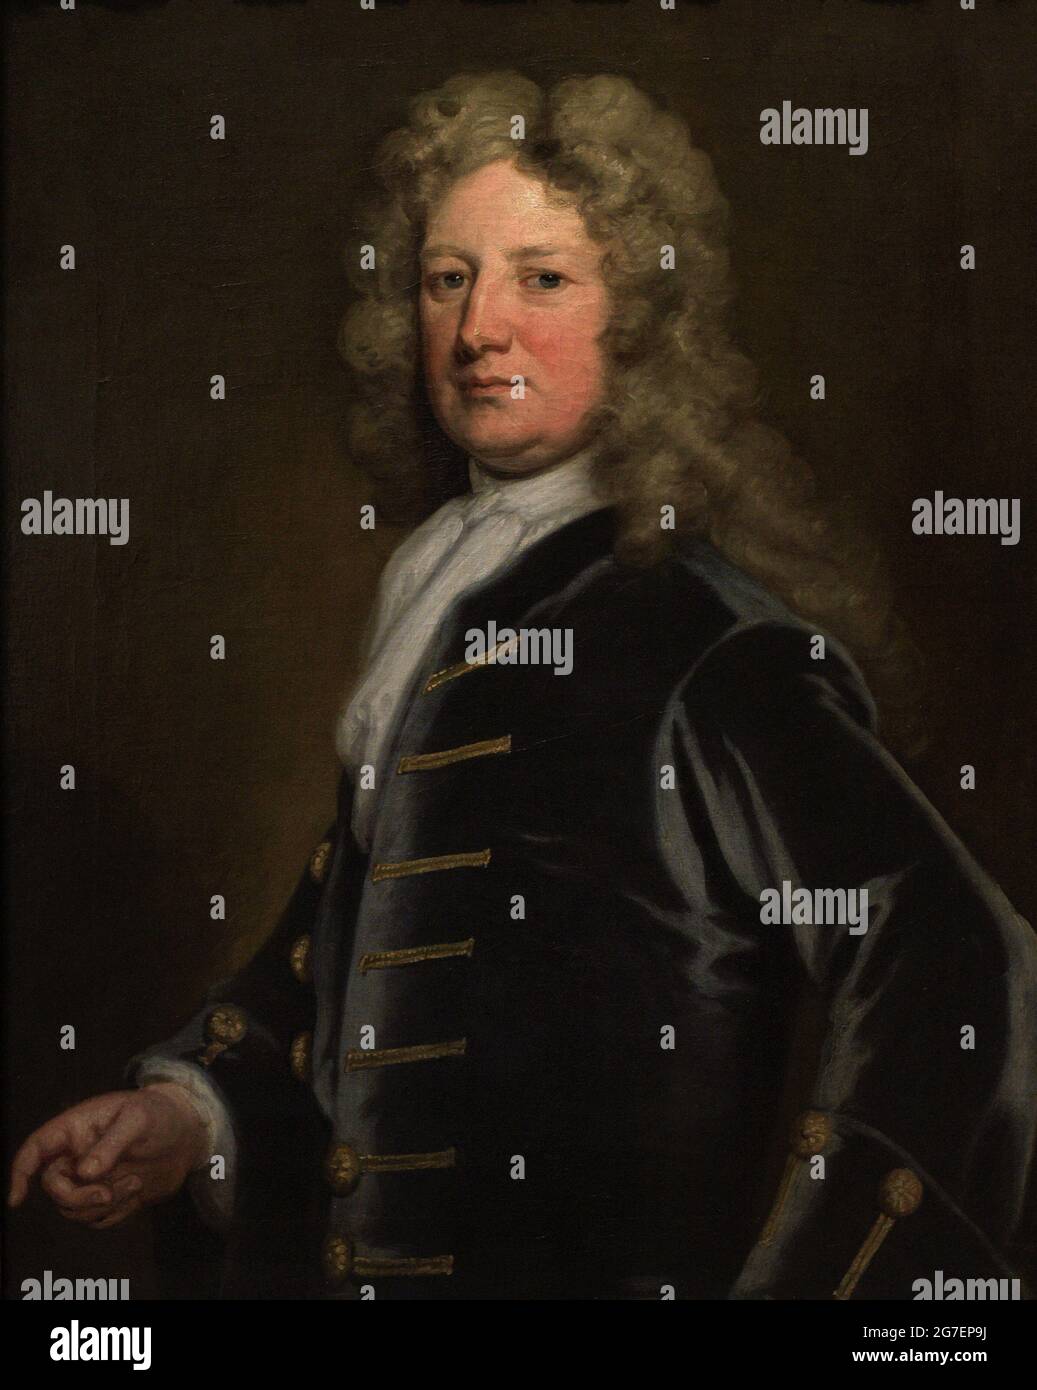 Thomas Wharton, 1er marquis de Wharton (1648-1715). Noble et politicien anglais. Portrait de Sir Godfrey Kneller (1646-1723). Huile sur toile (91,4 x 71,1 cm), 1715. Galerie nationale de portraits. Londres, Angleterre, Royaume-Uni. Banque D'Images